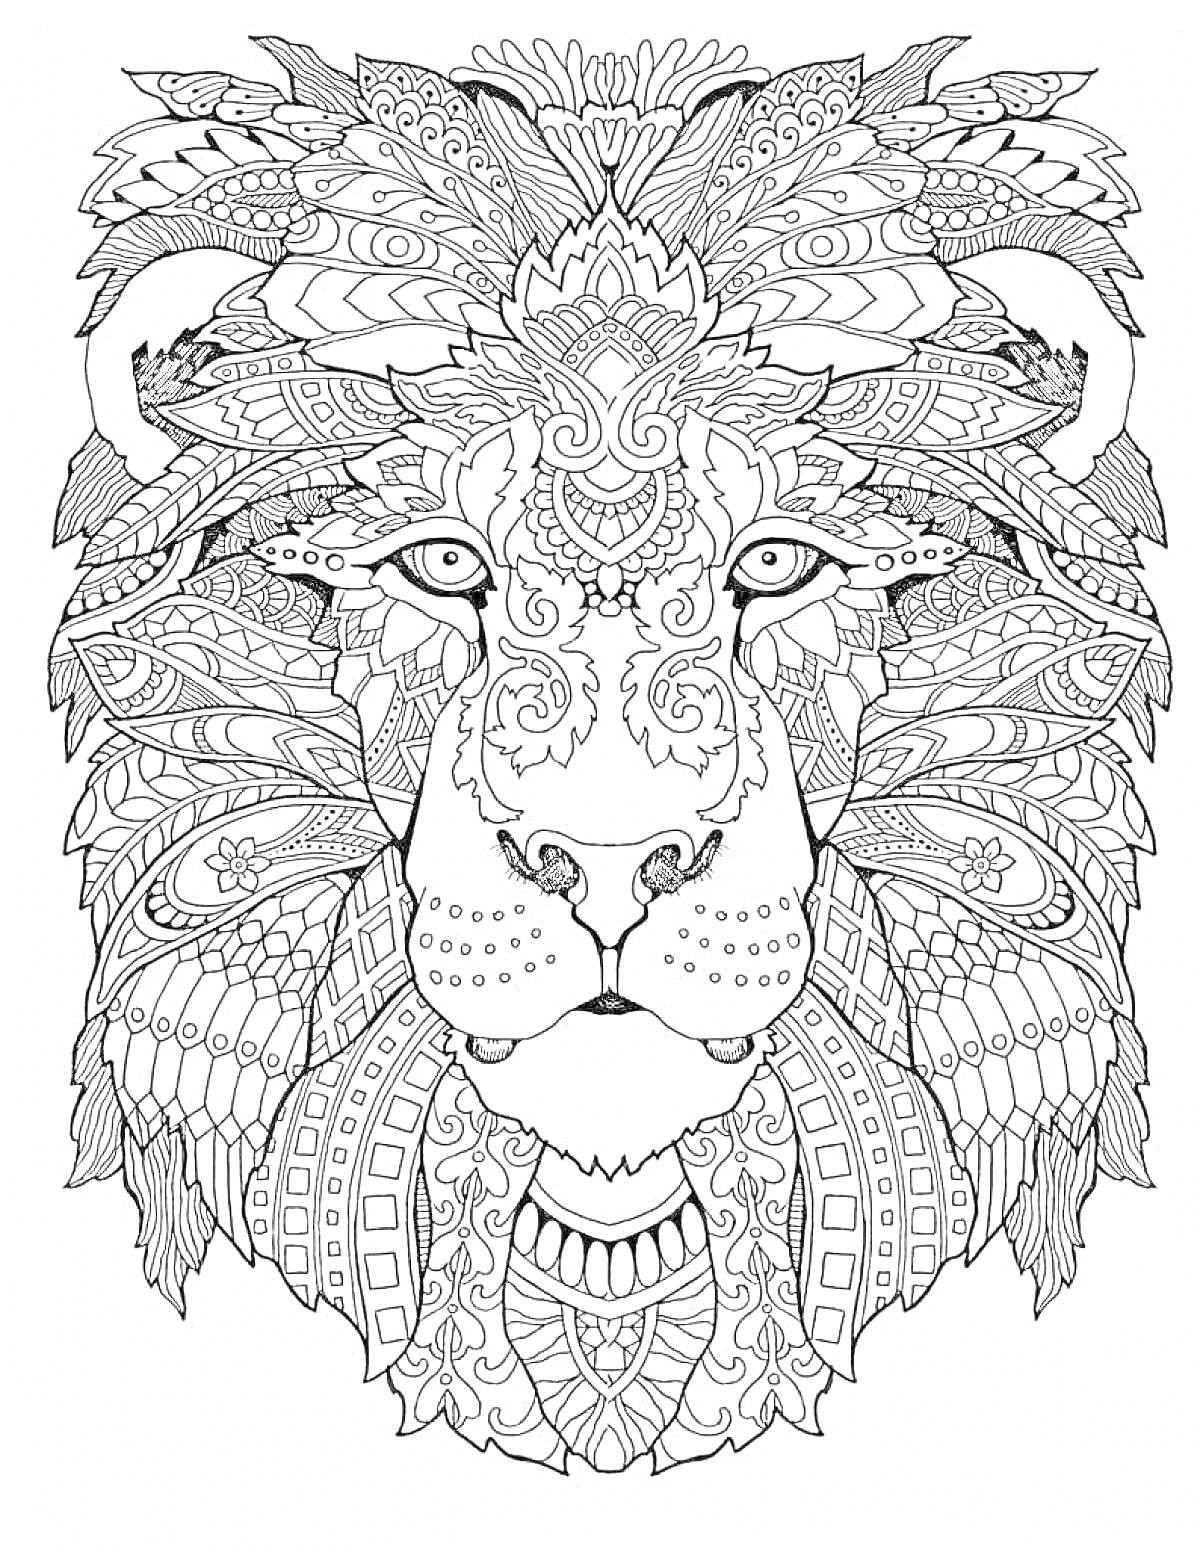 Раскраска Лев с декоративными элементами, орнамент и узоры по всей поверхности